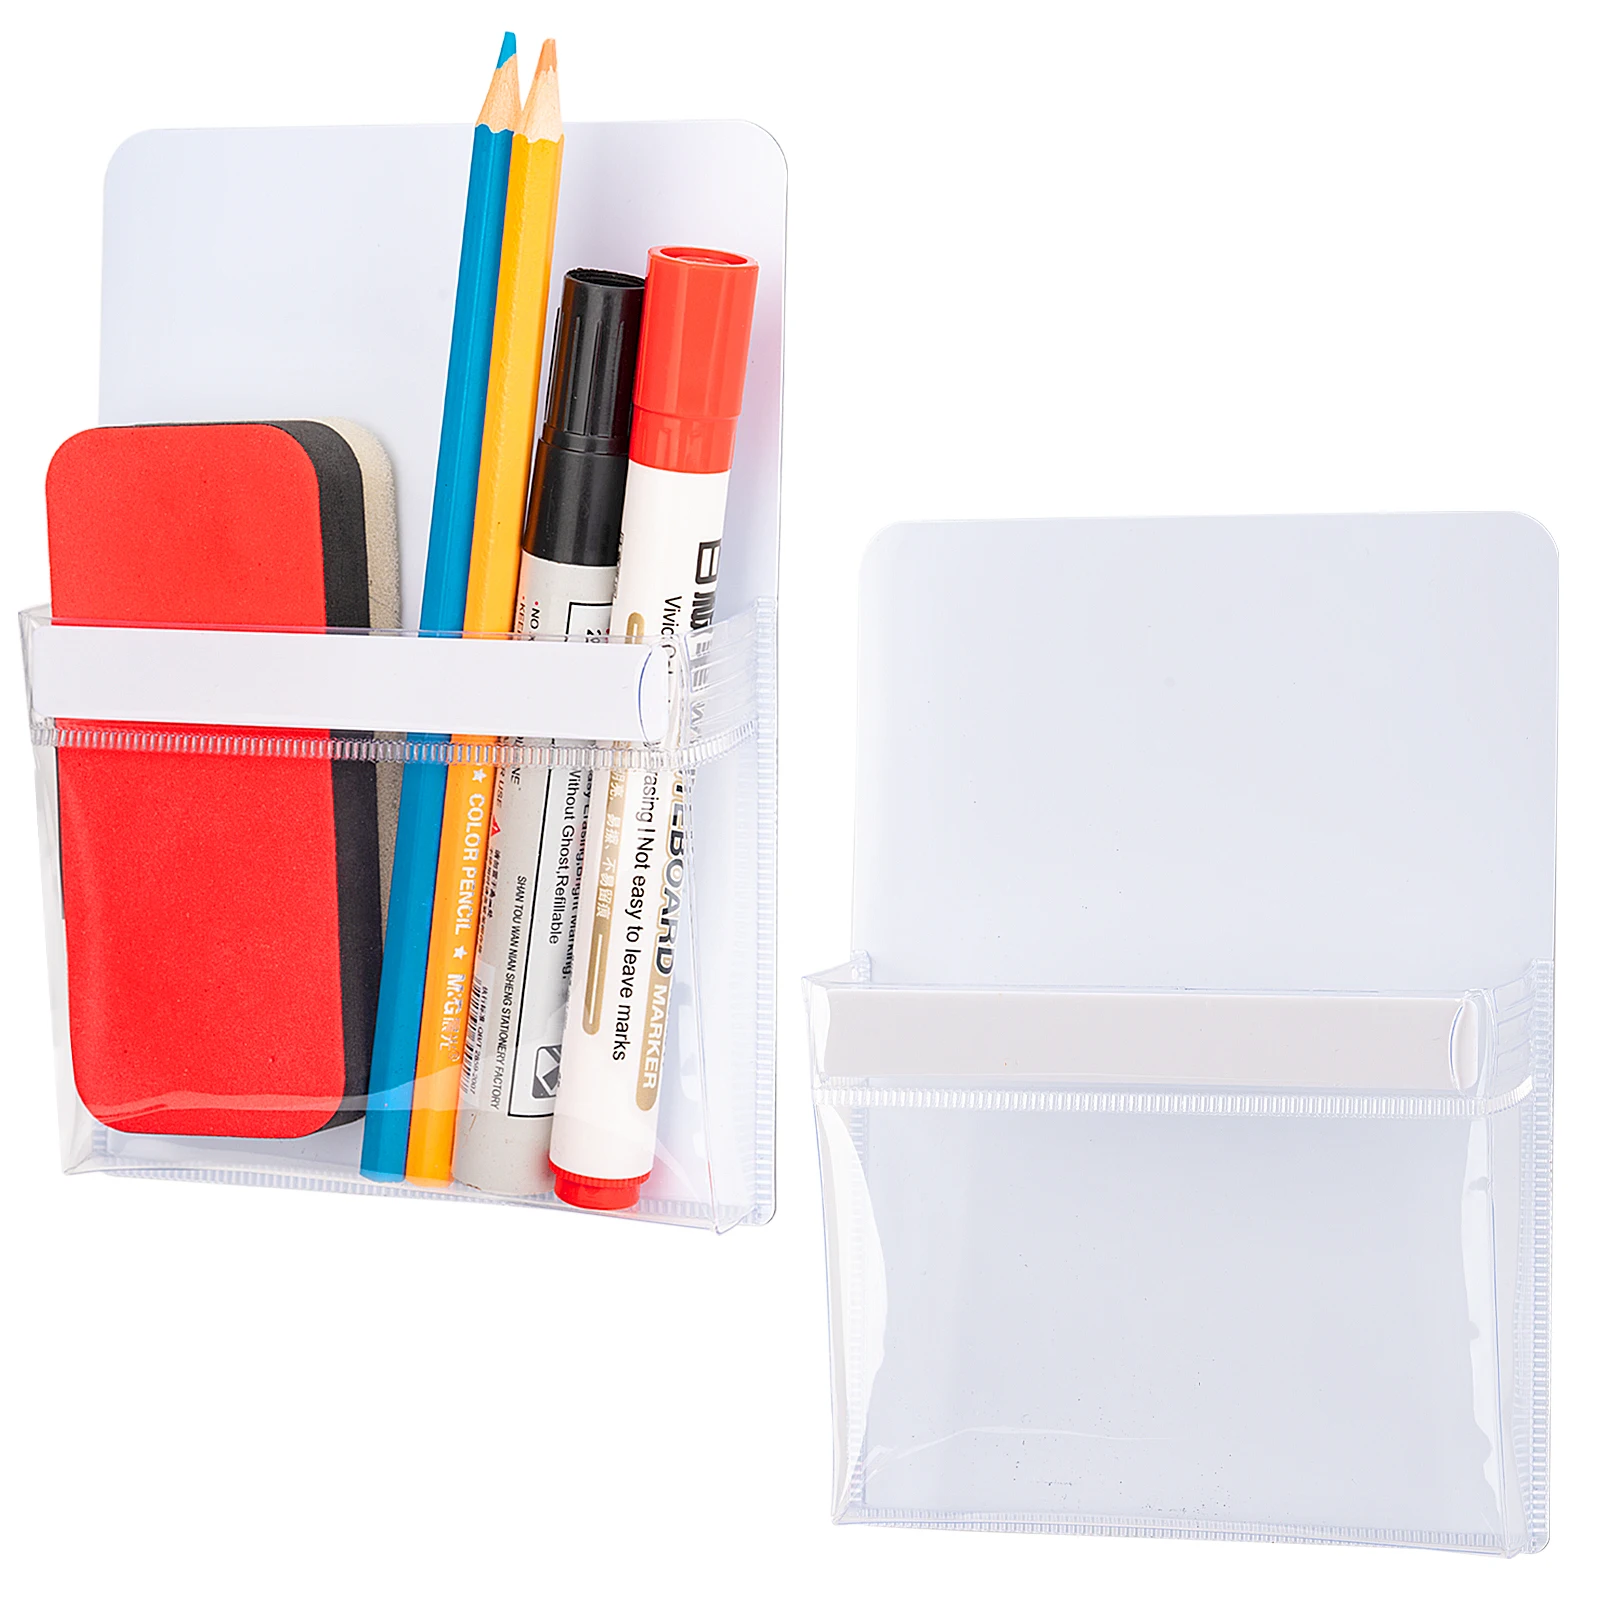 Magnetic Holder,Magnet Pocket Storage for Dry Erase Marker for Locker,Classroom,White Board,Fridge